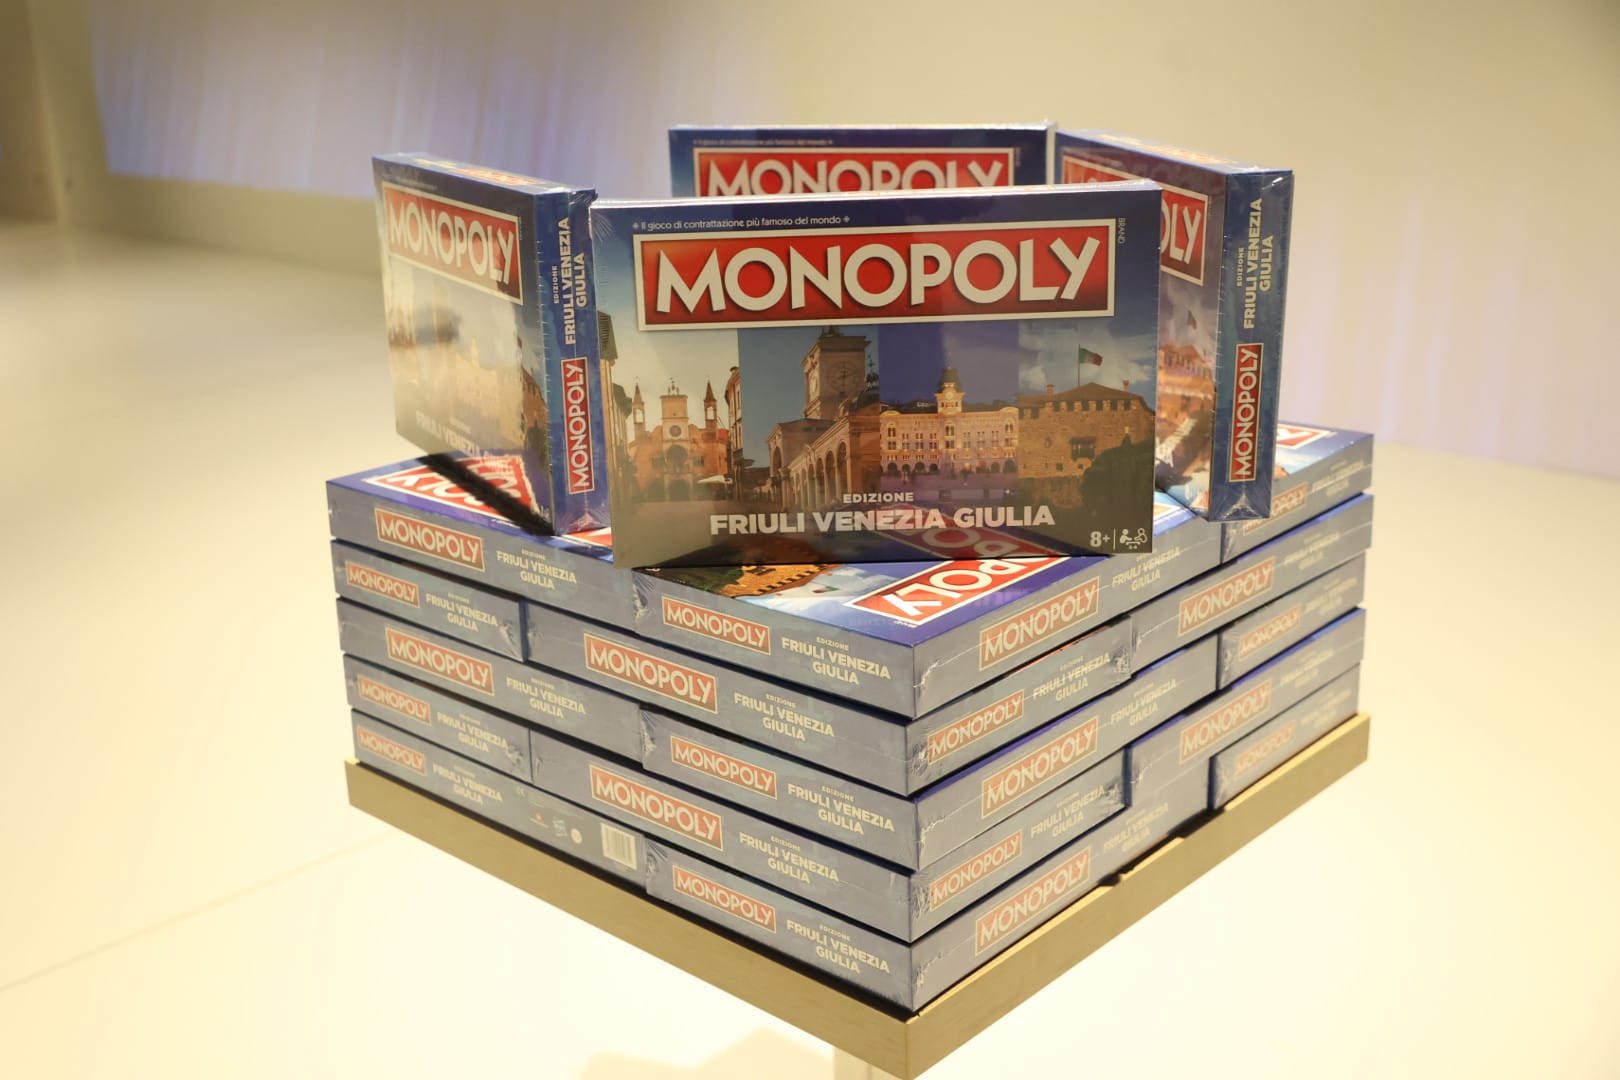 Immagine per Tiare festeggia 10 anni, nasce il Monopoly a tema Friuli Venezia Giulia